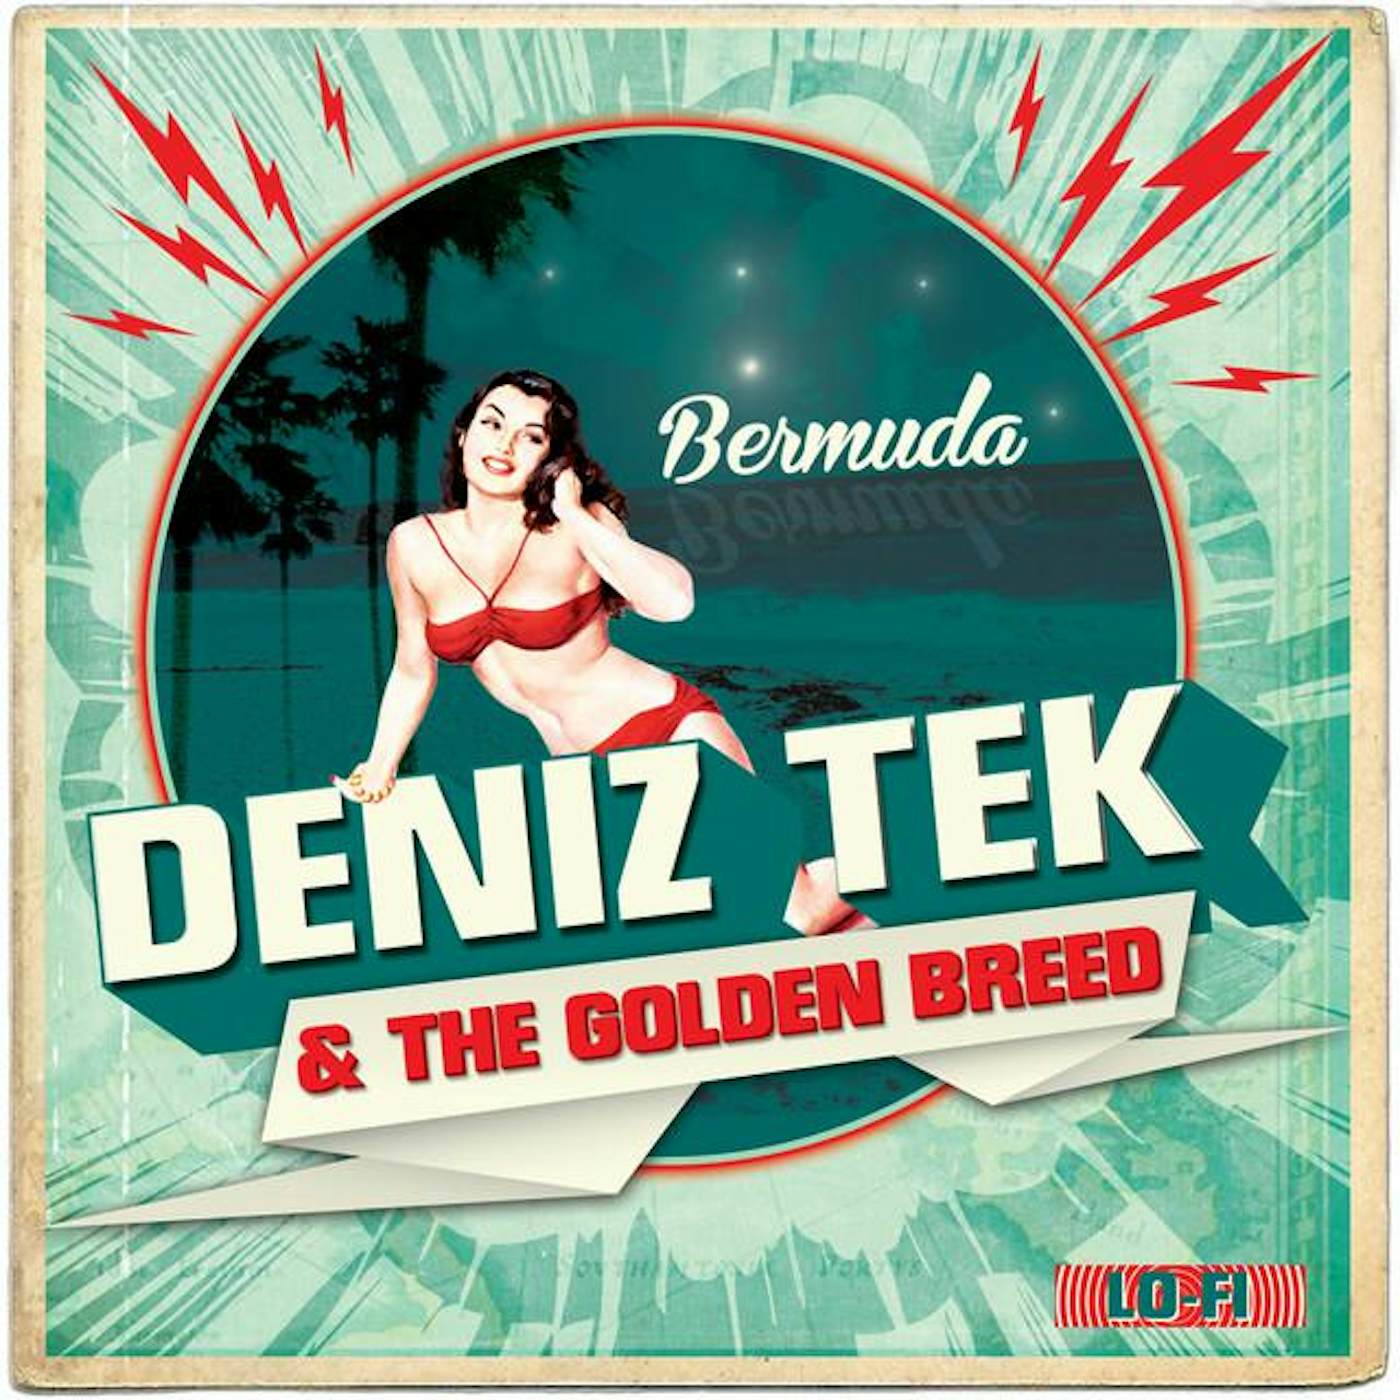 Deniz Tek and the Golden Breed